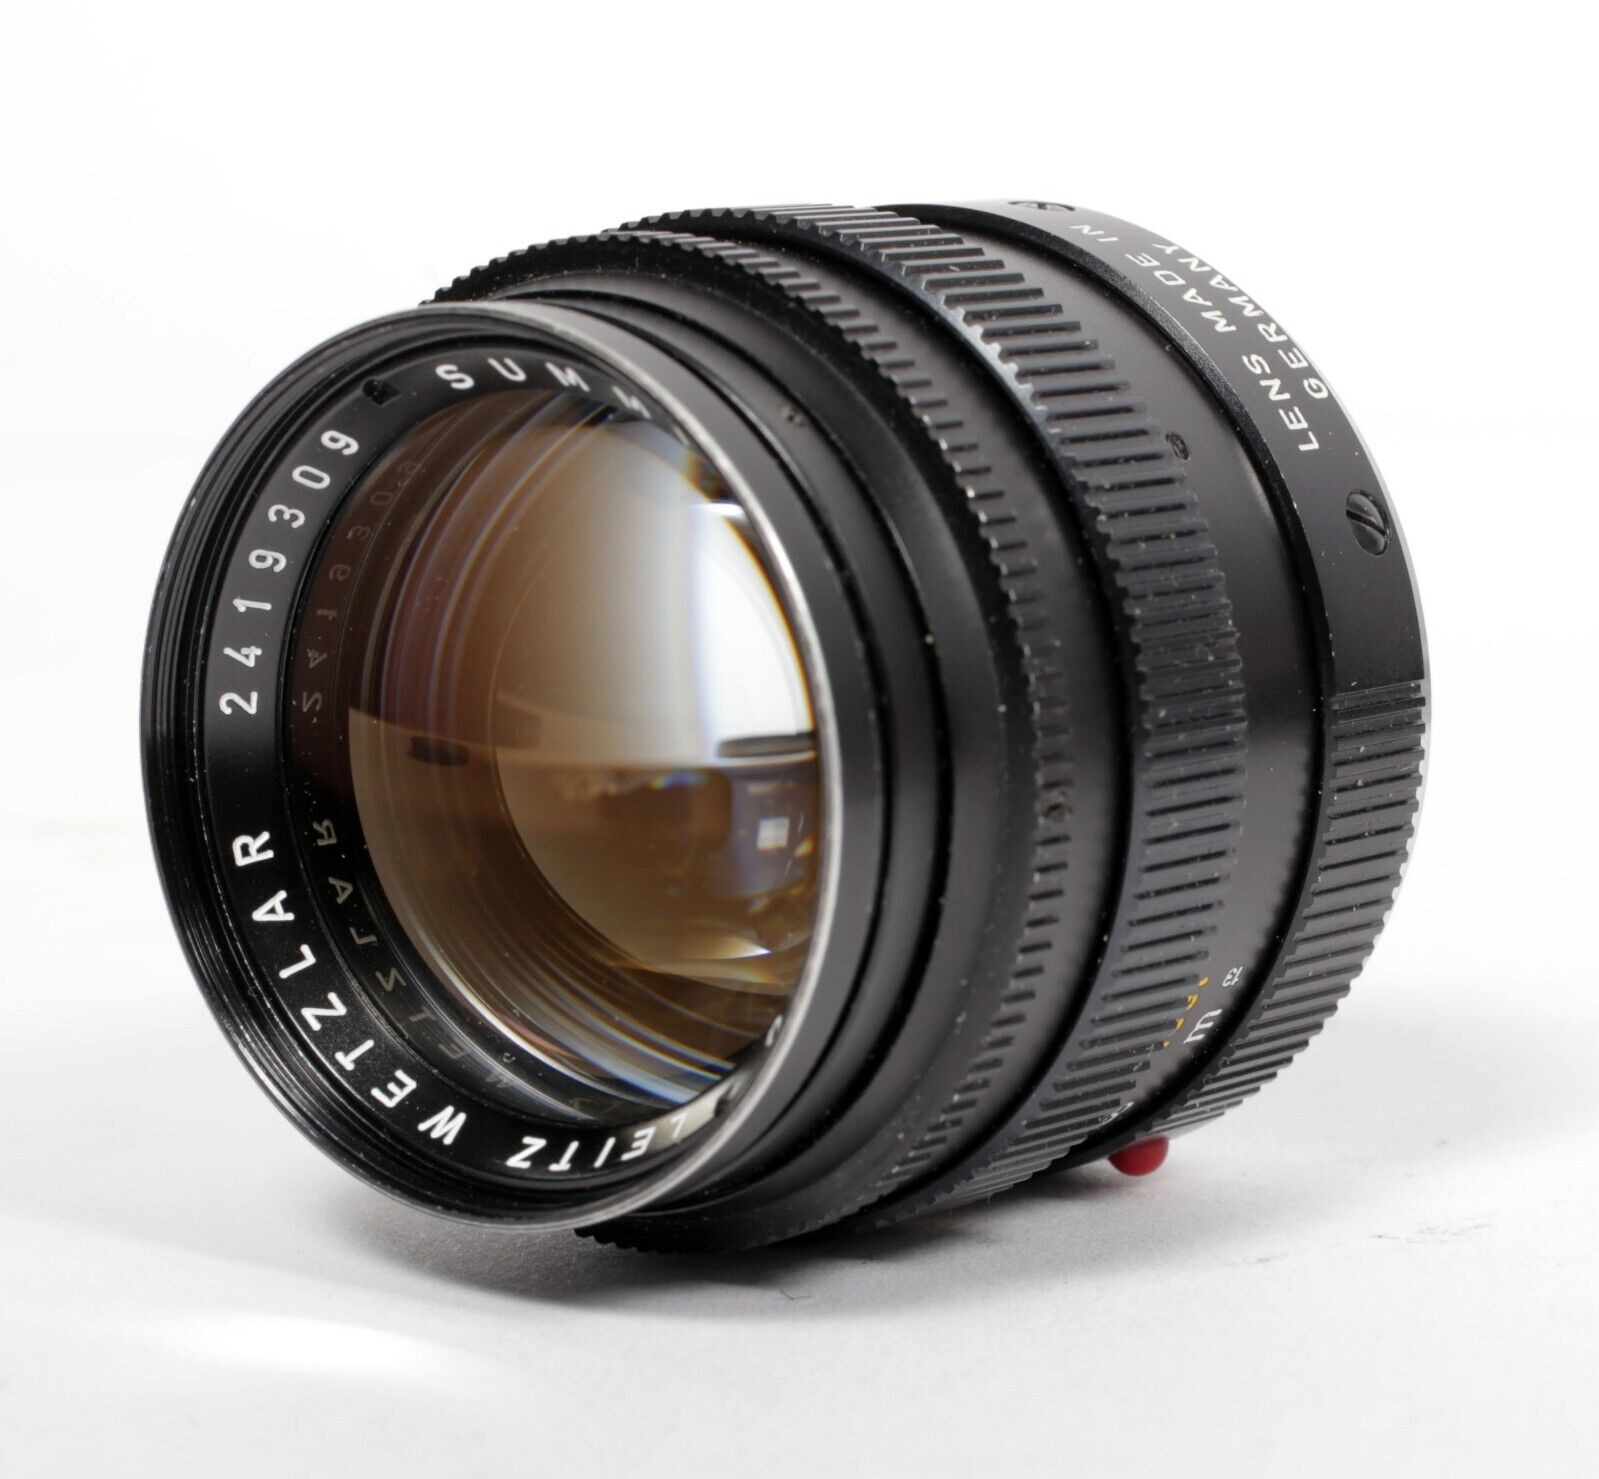 Leica Leitz Summilux M 50mm F1.4 lens V2 E43 + 12586 shade #309